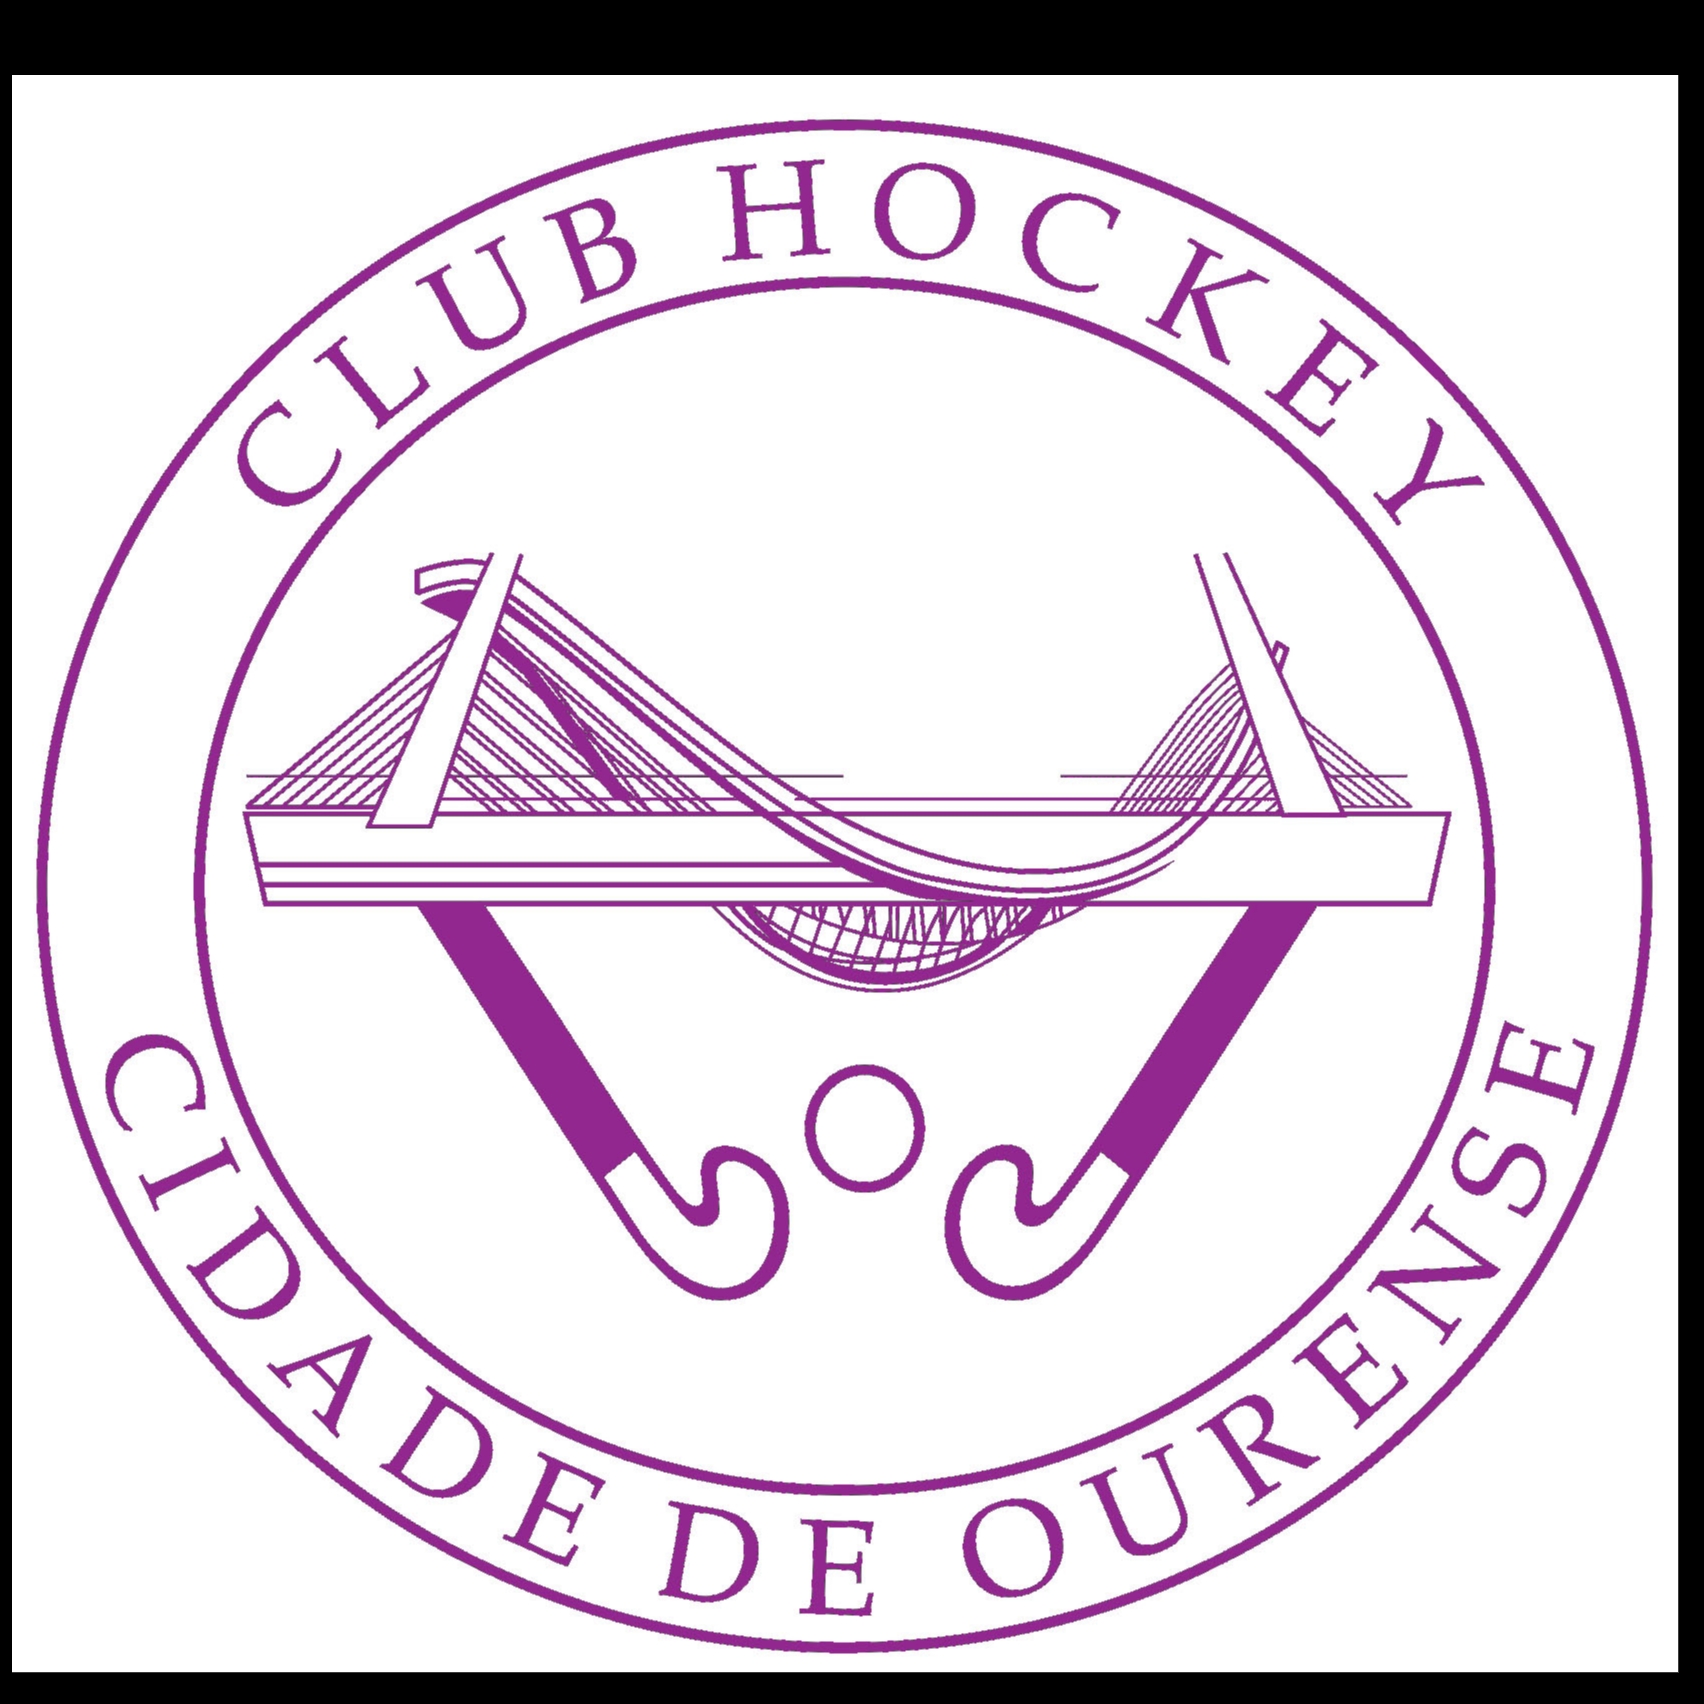 CLUB HOCKEY CIDADE DE OURENSE